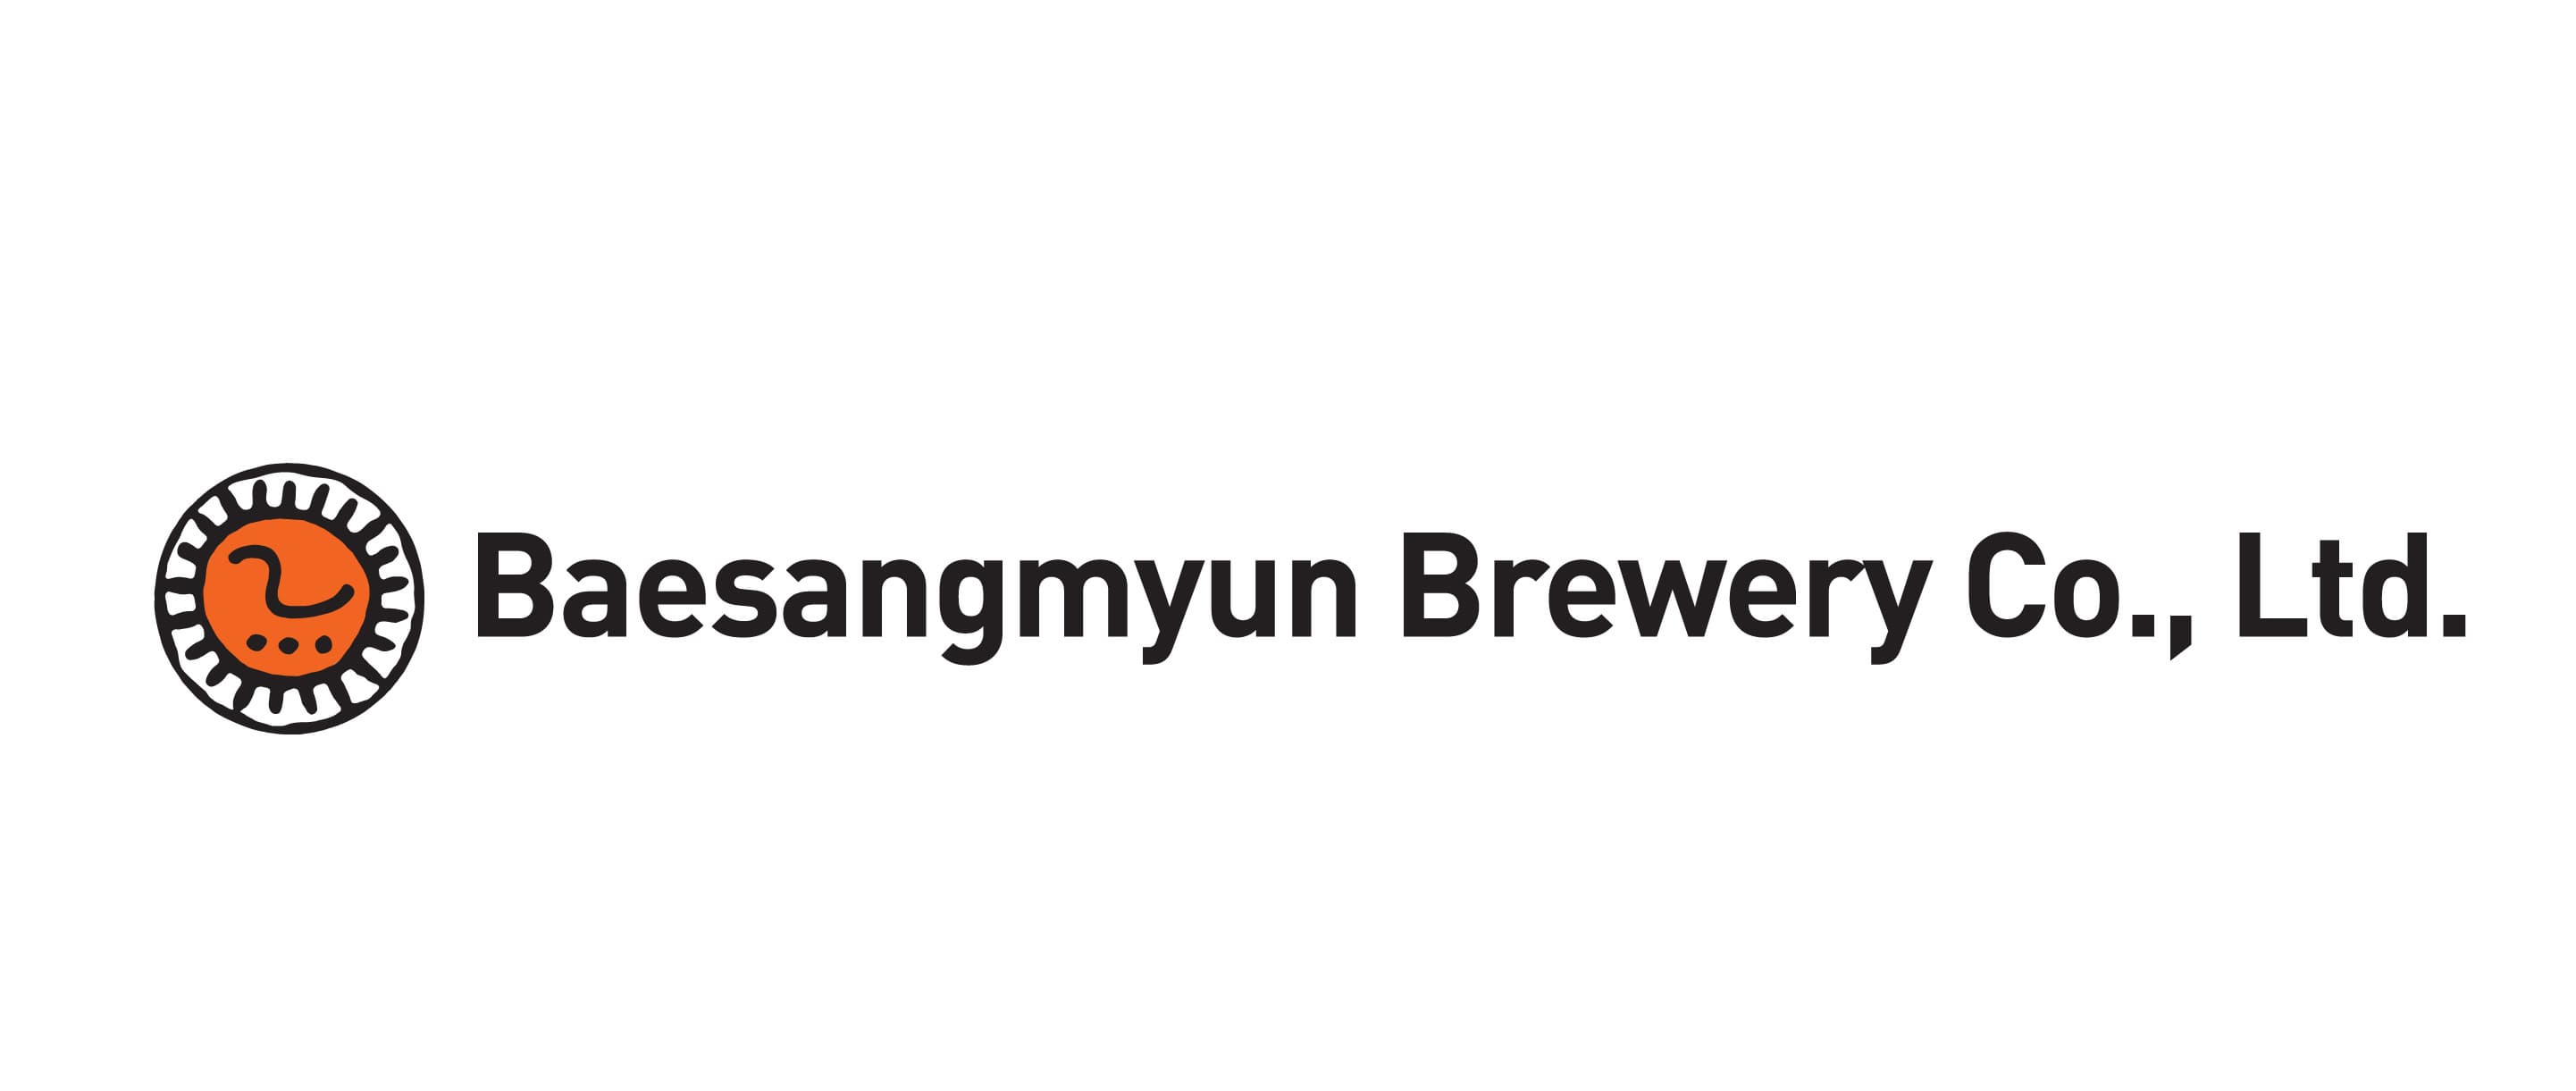 BAE SANG MYUN BREWERY COMPANY